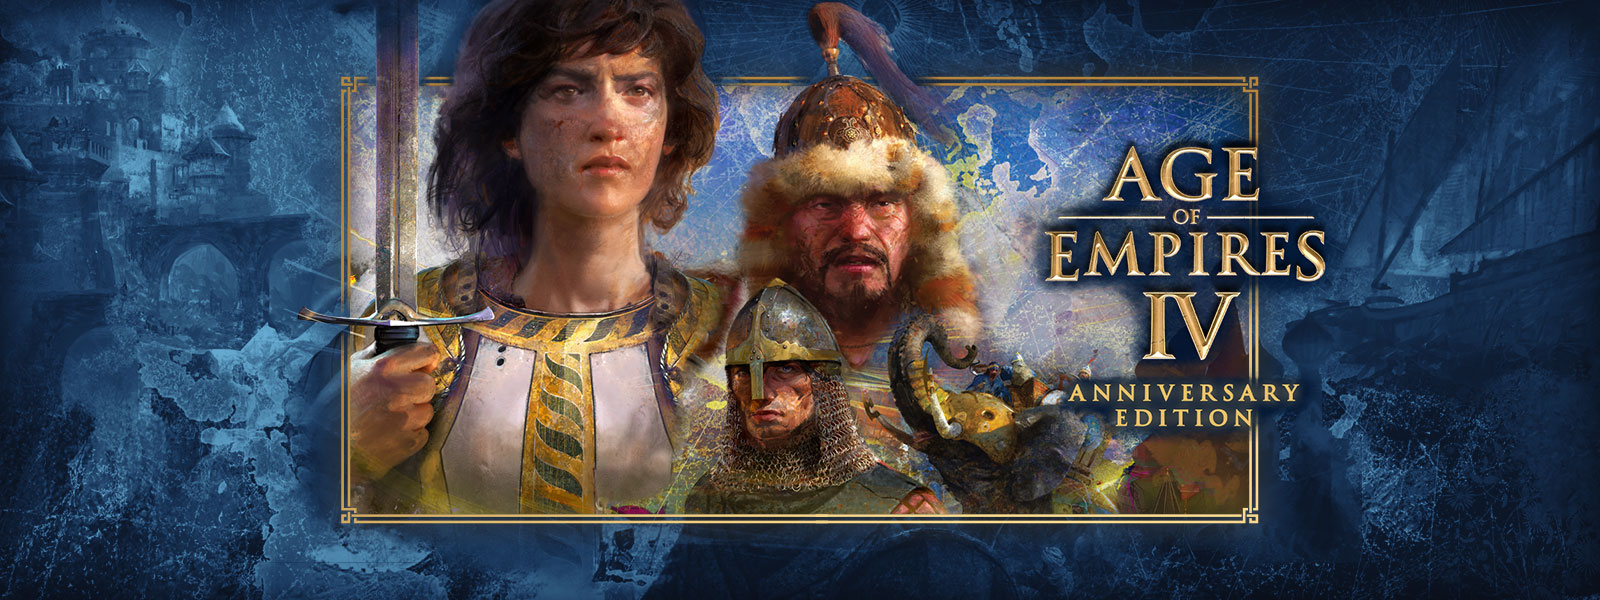 Age of Empires IV: Anniversary Edition. Etrafında savaş sahneleri ve zırhlı filler olan üç karakter.